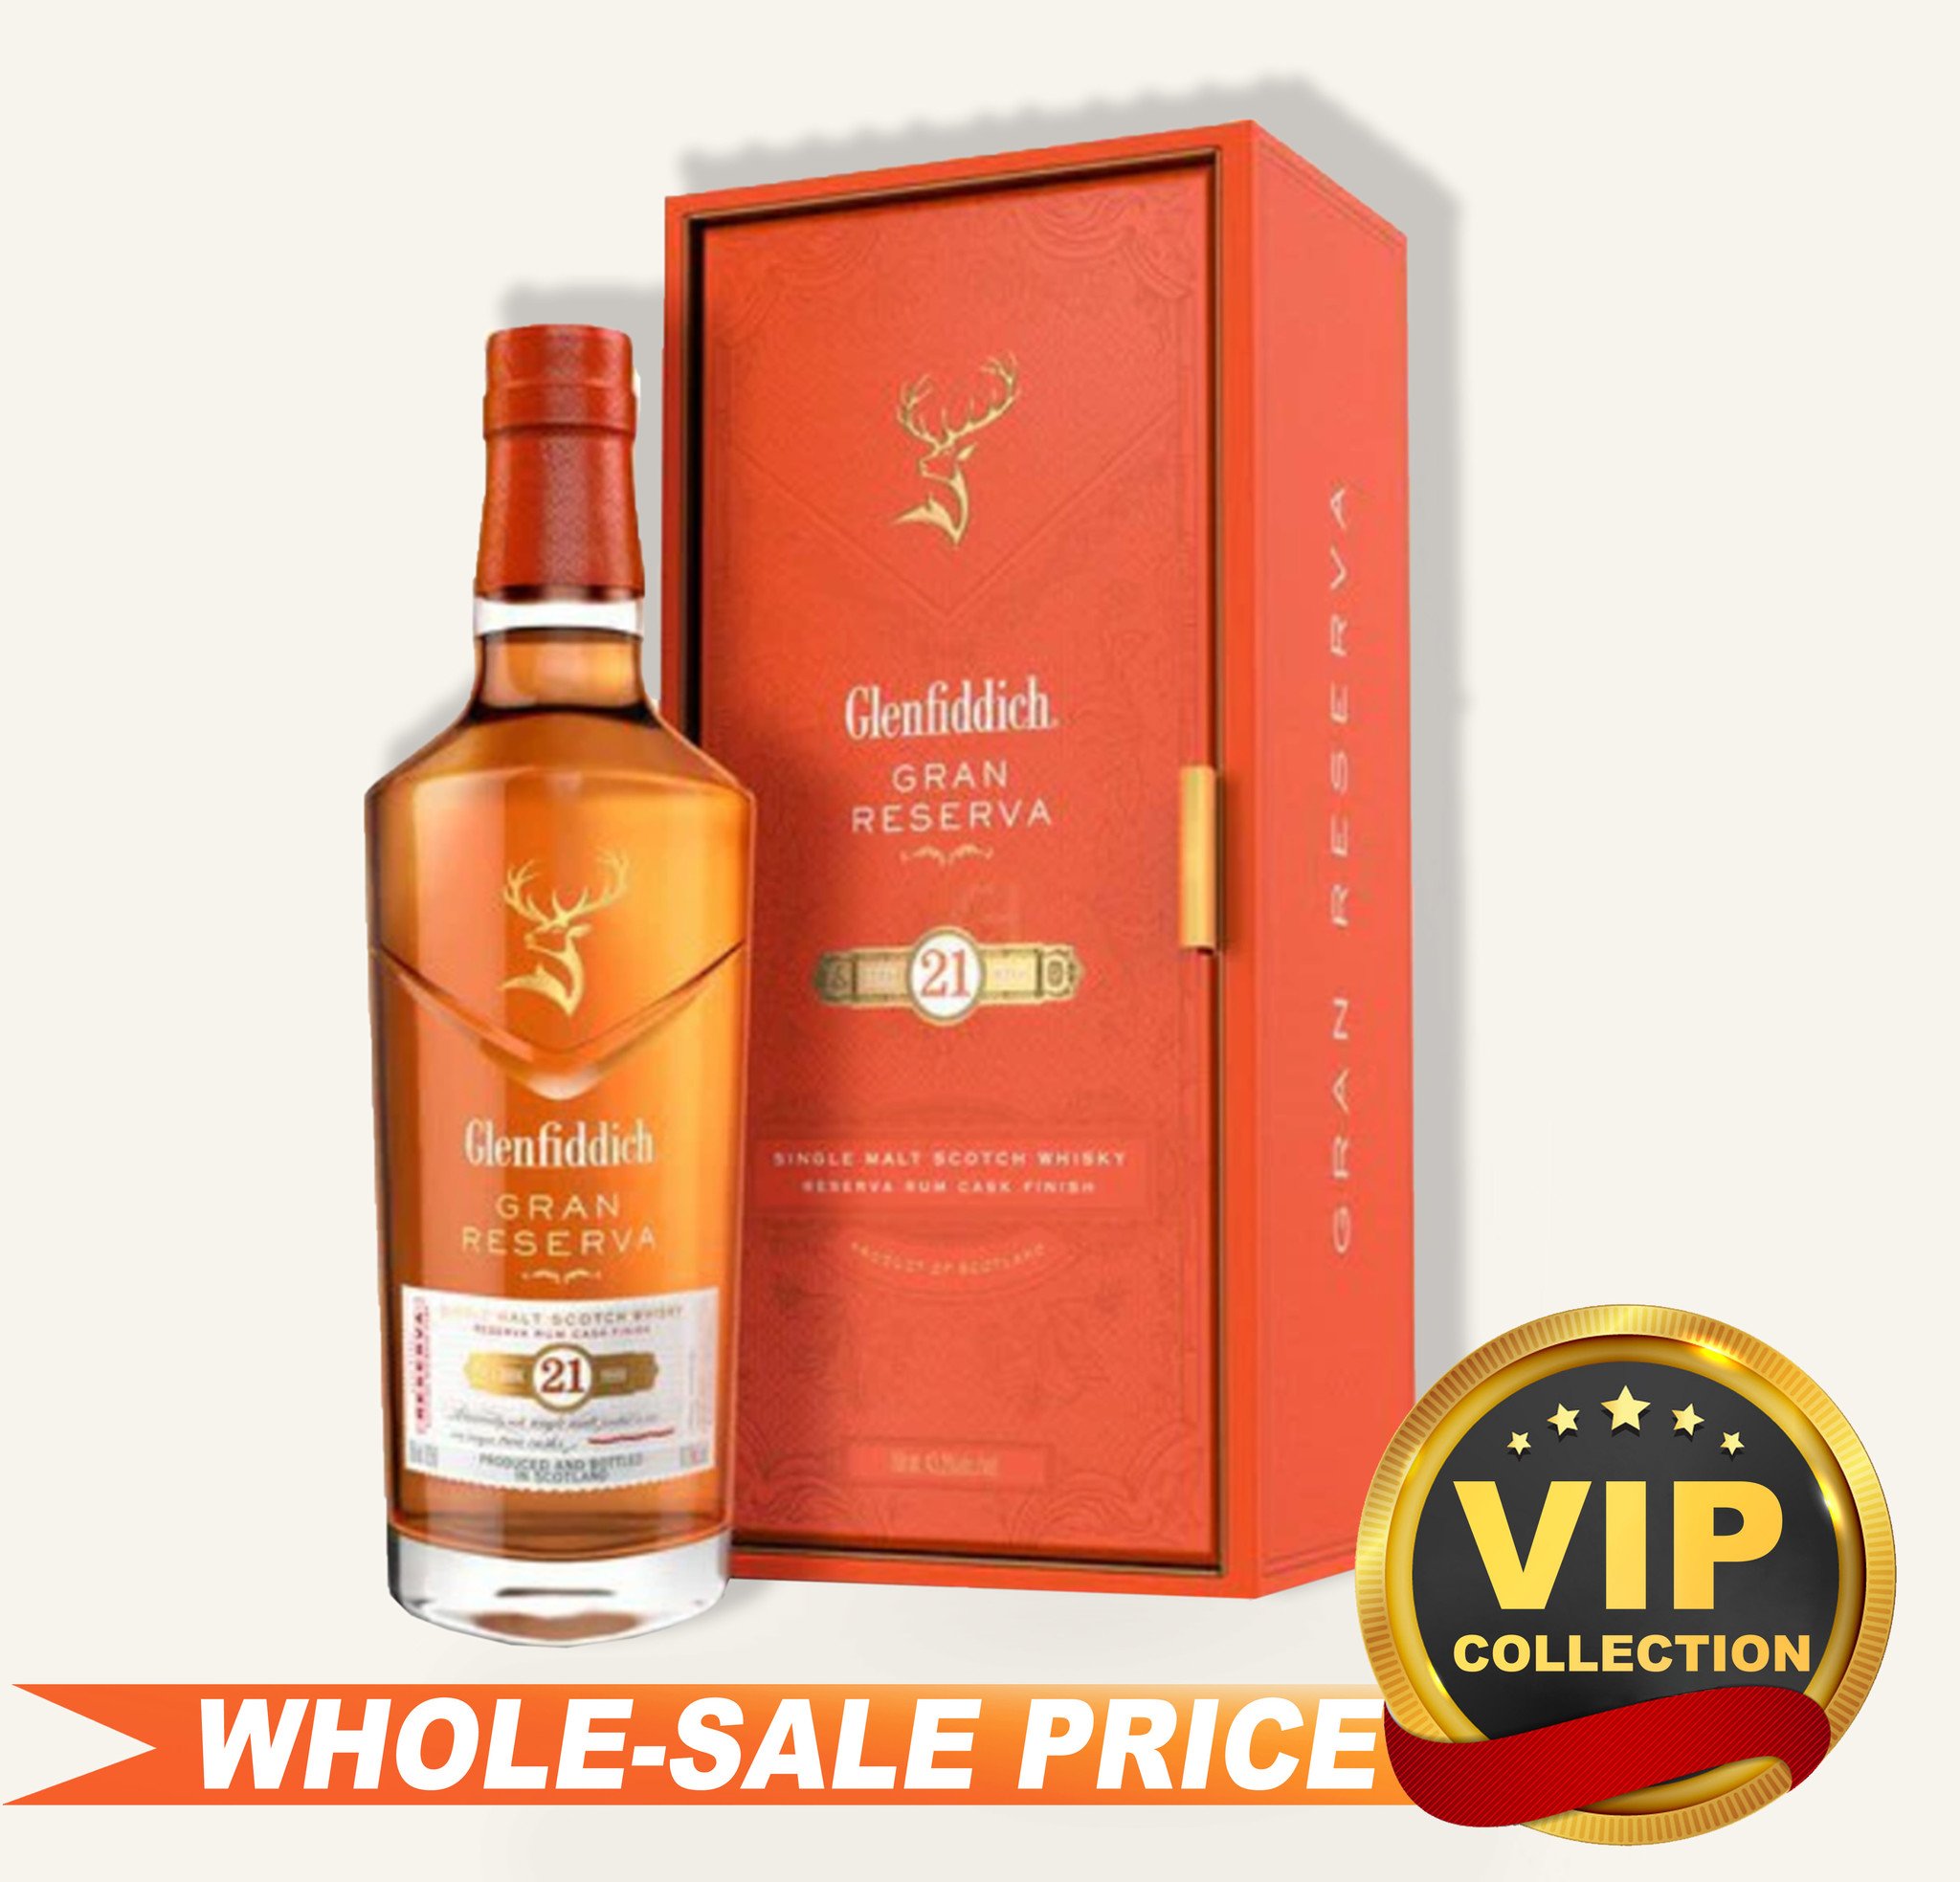 Glenfiddich 21 Year Gran Reserva Rum Cask Finish Scotch Whisky $219